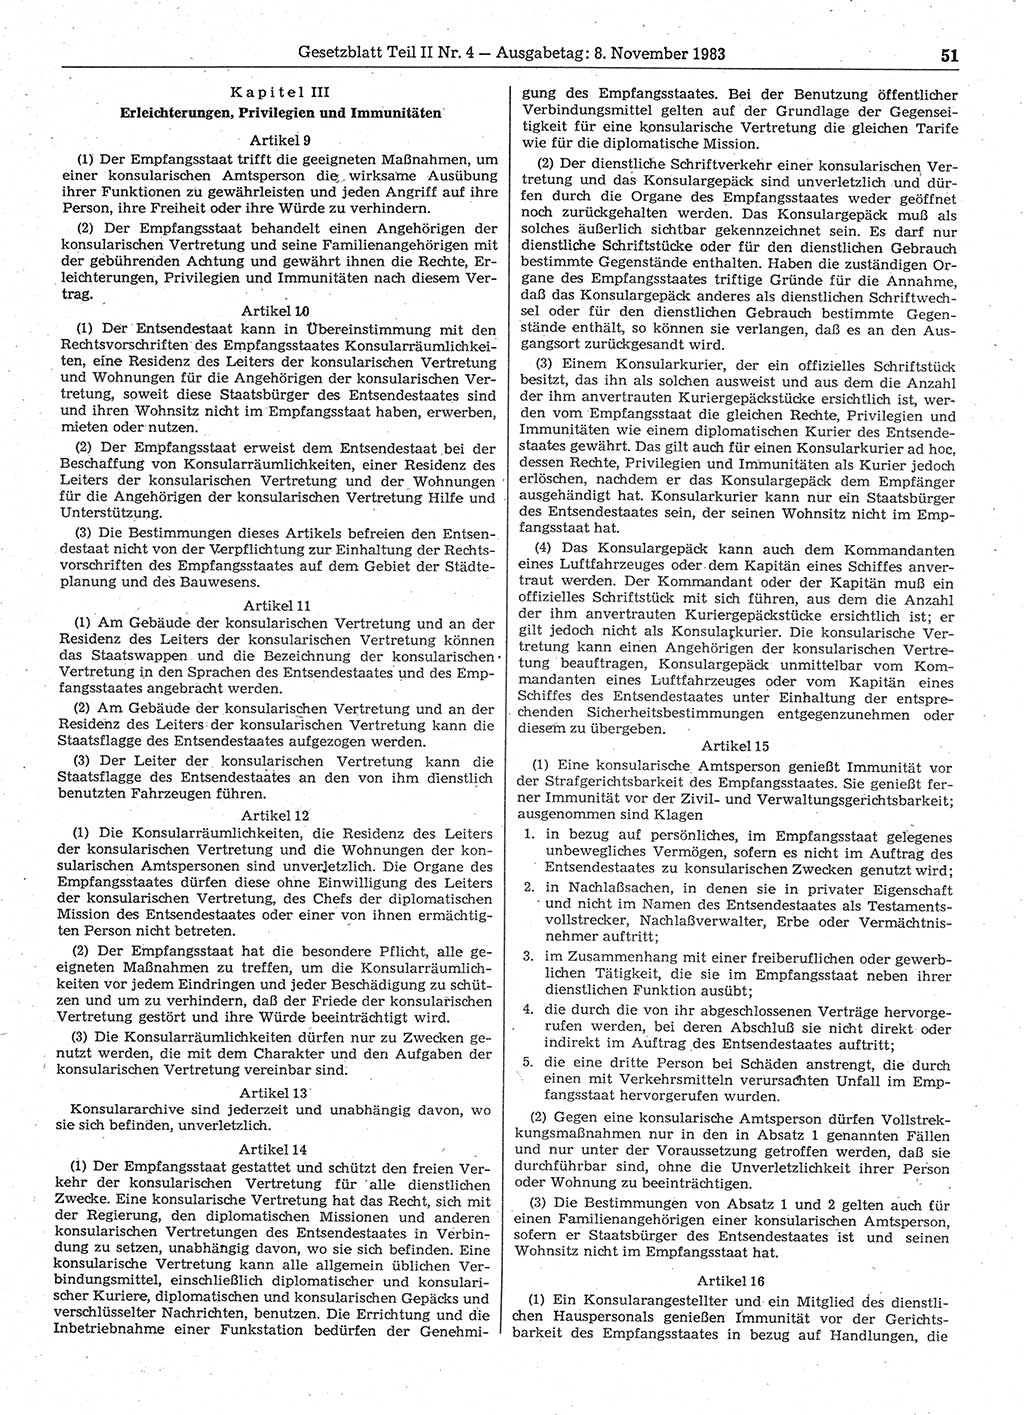 Gesetzblatt (GBl.) der Deutschen Demokratischen Republik (DDR) Teil ⅠⅠ 1983, Seite 51 (GBl. DDR ⅠⅠ 1983, S. 51)